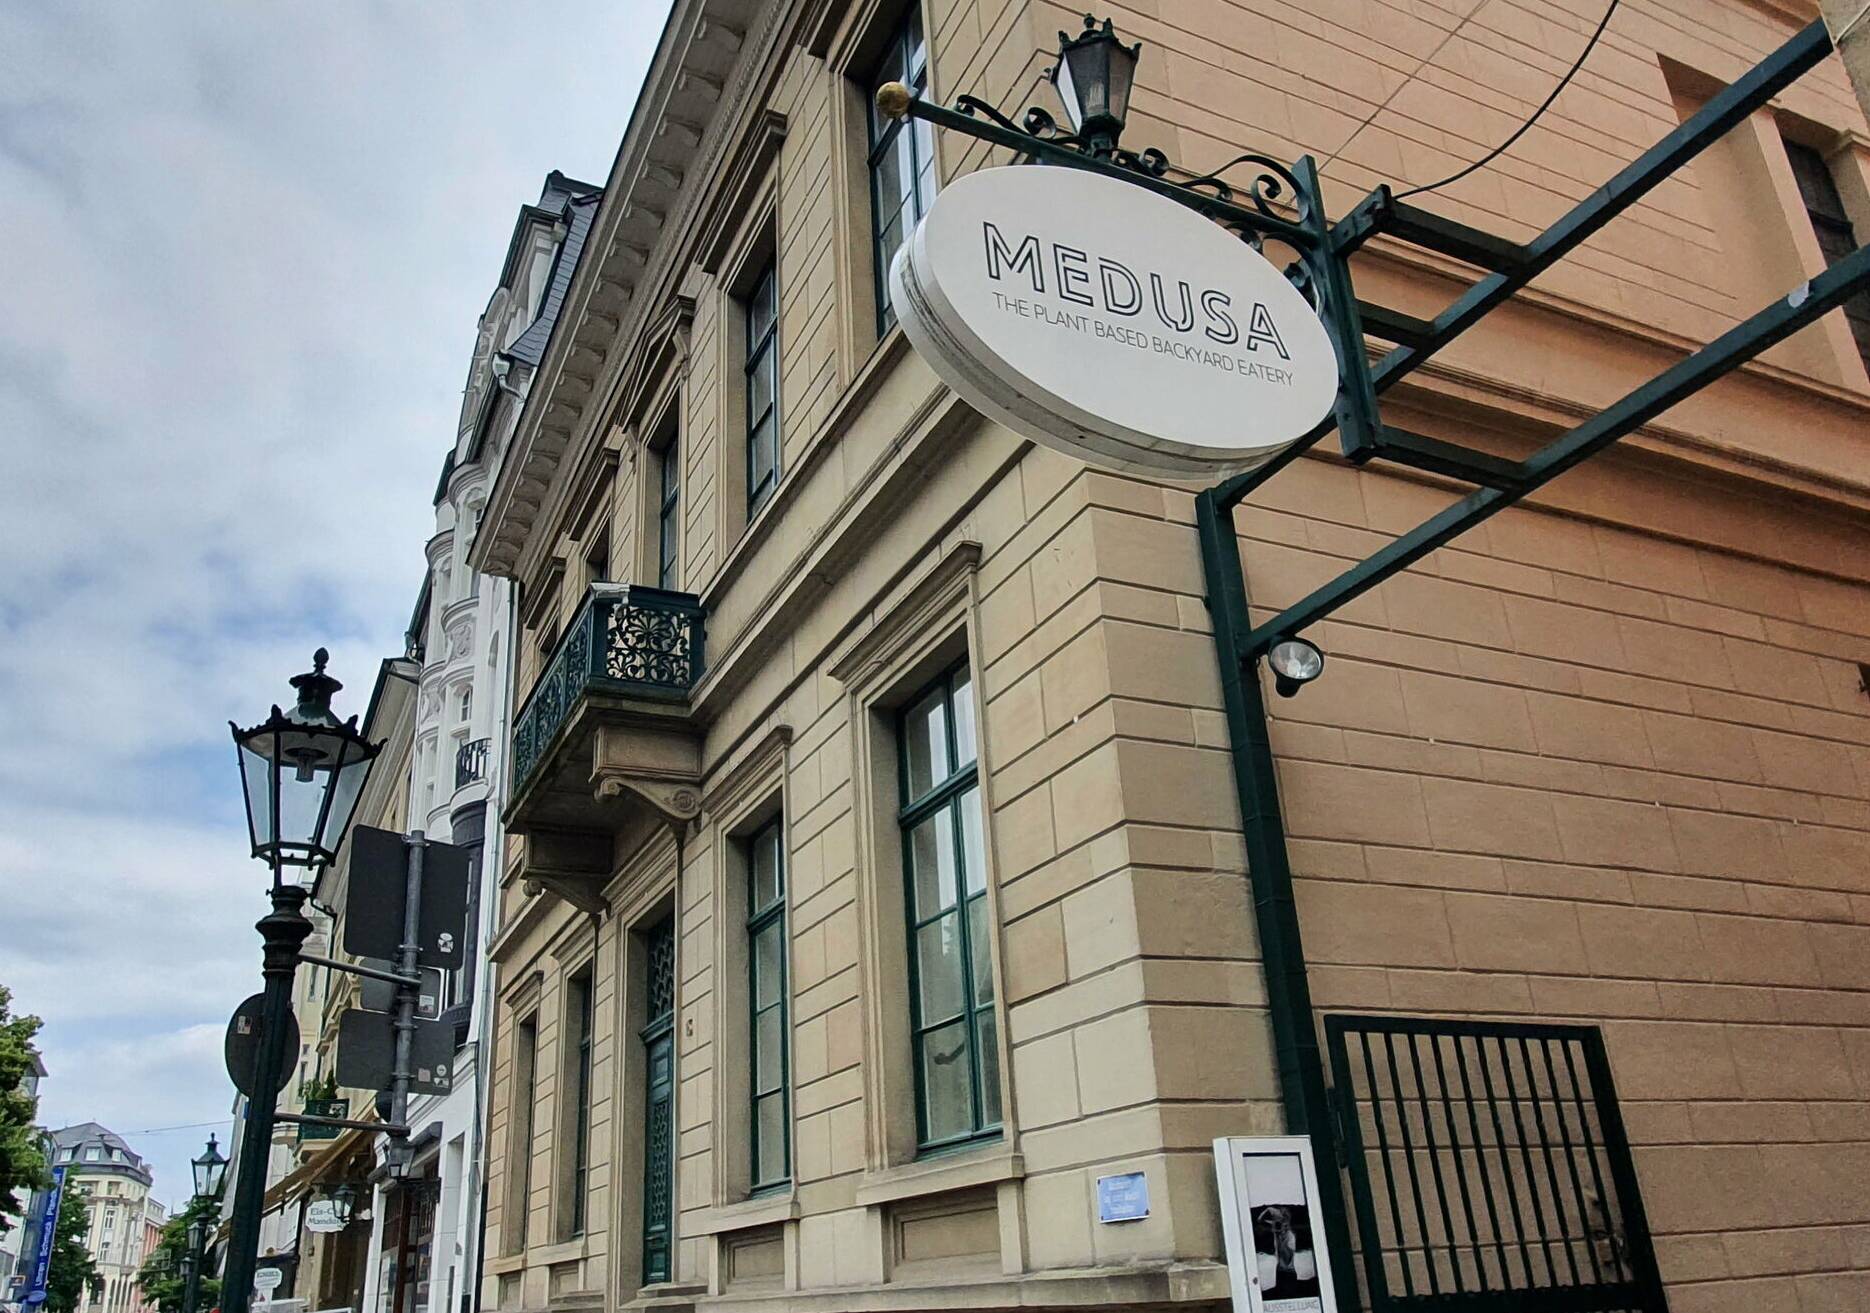  Gut ausgeschildert: Hier führt der Weg hinein zum „Café Medusa“ in den Breuer-Höfen am Laurentiusplatz.  